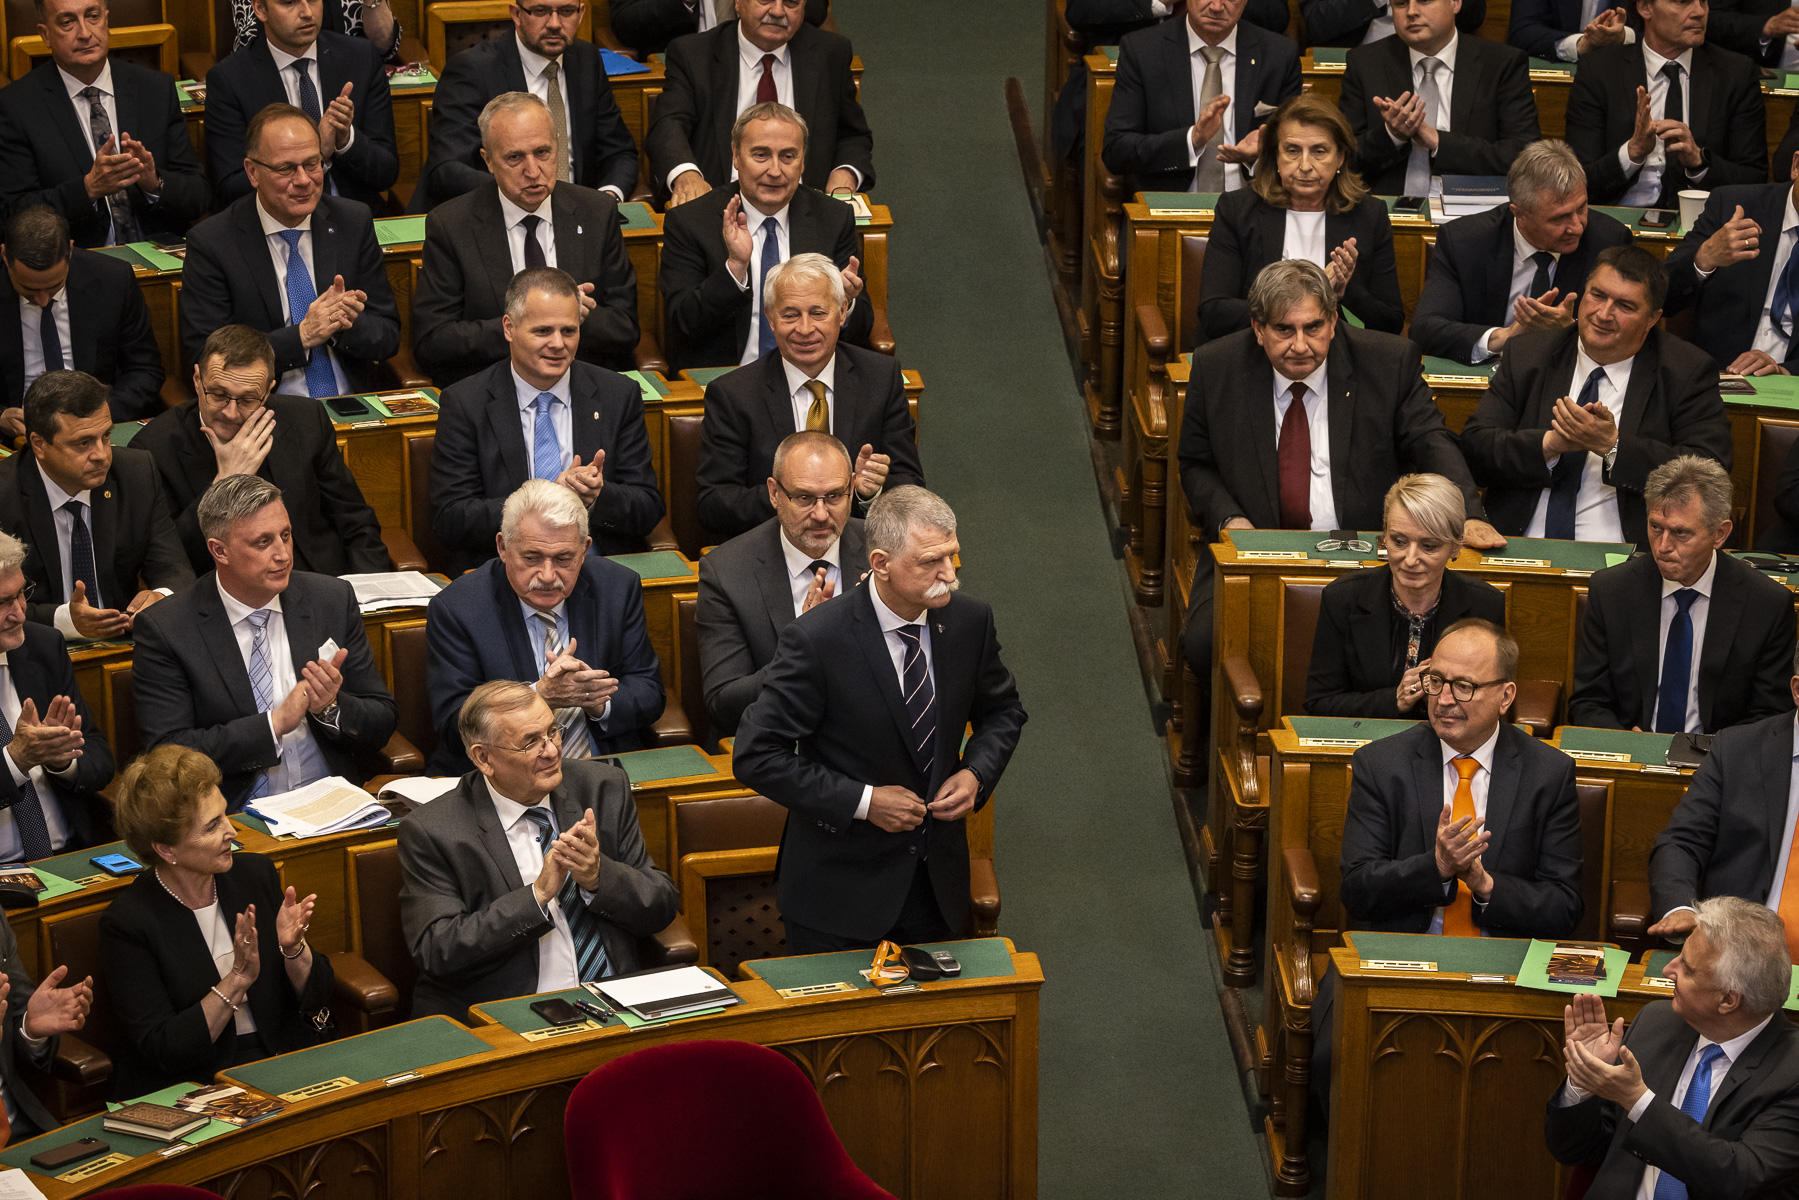 26 vezetői posztra választottak képviselőket az új Országgyűlésben, kivétel nélkül férfiakat